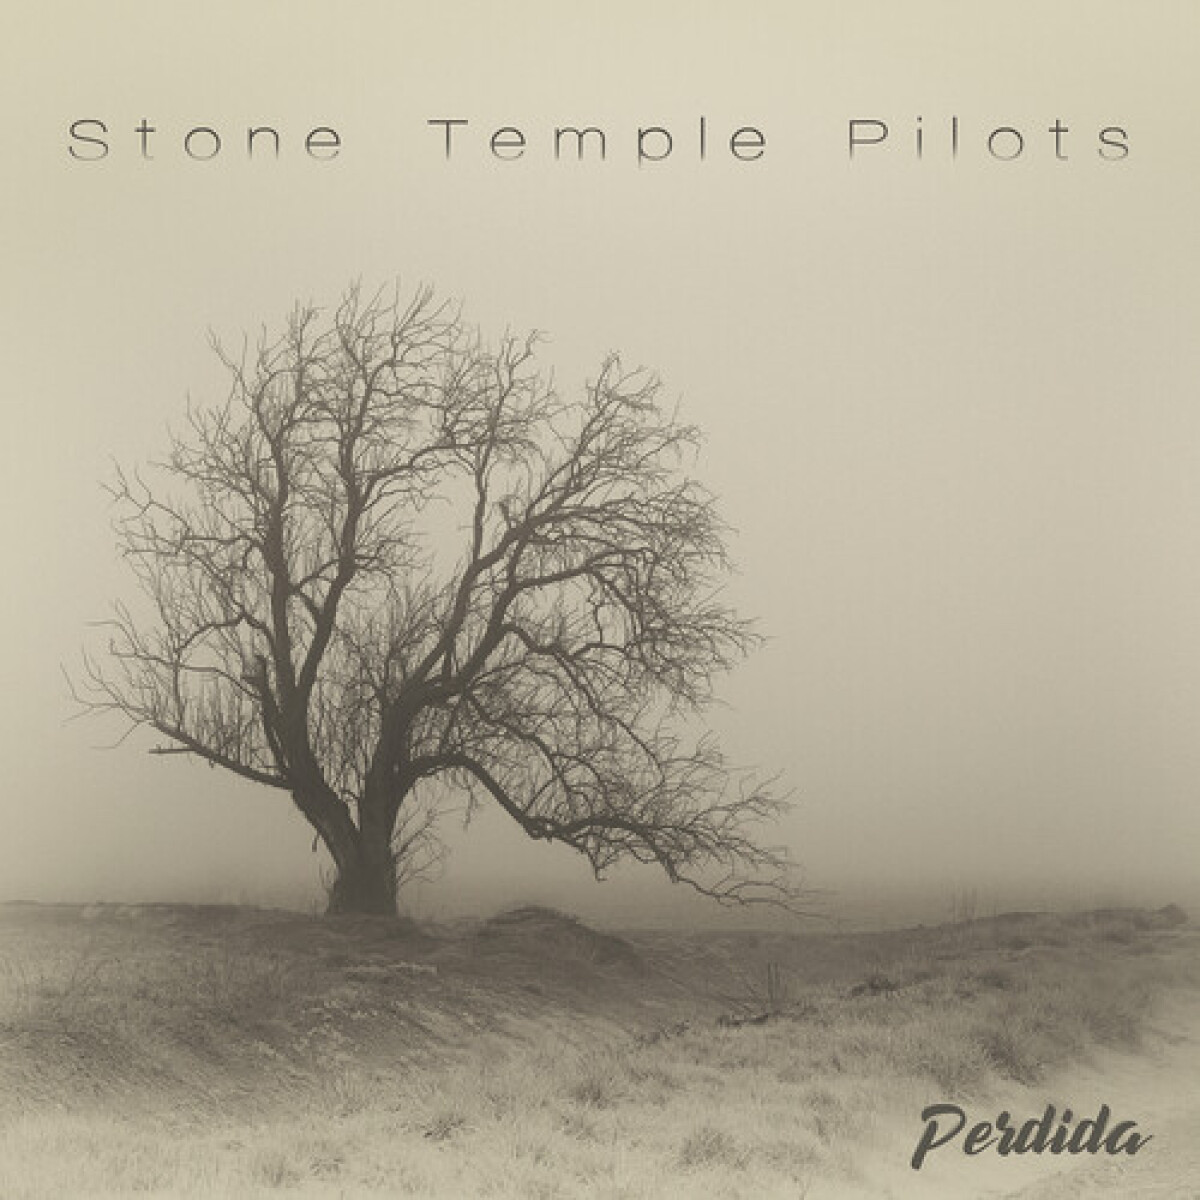 (l) Stone Temple Pilots - Perdida - Vinilo 